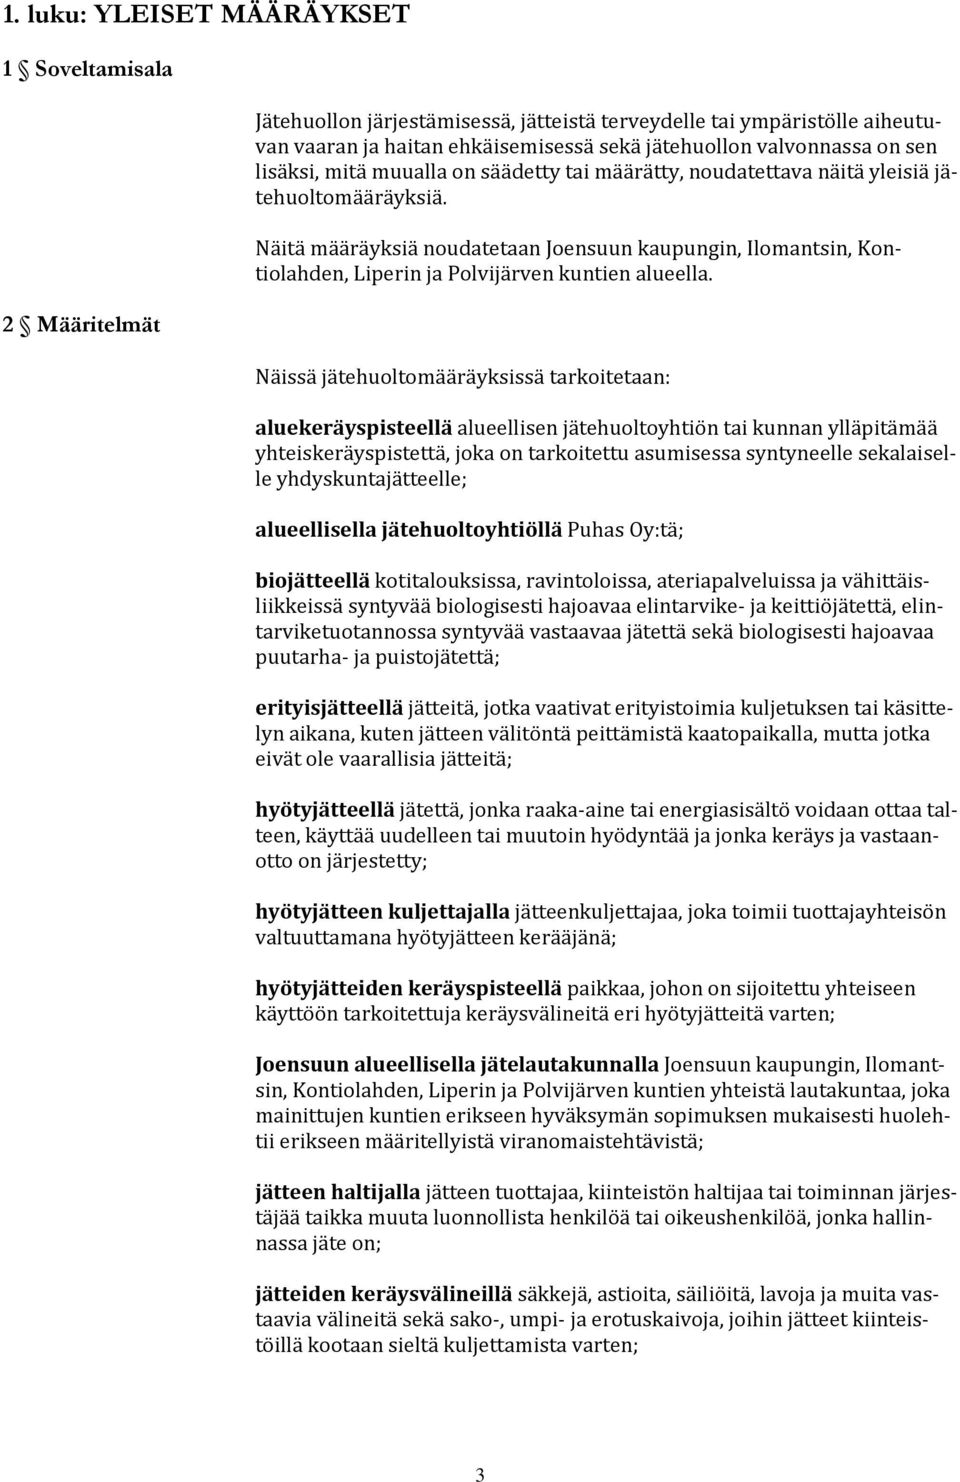 Näitä määräyksiä noudatetaan Joensuun kaupungin, Ilomantsin, Kontiolahden, Liperin ja Polvijärven kuntien alueella.